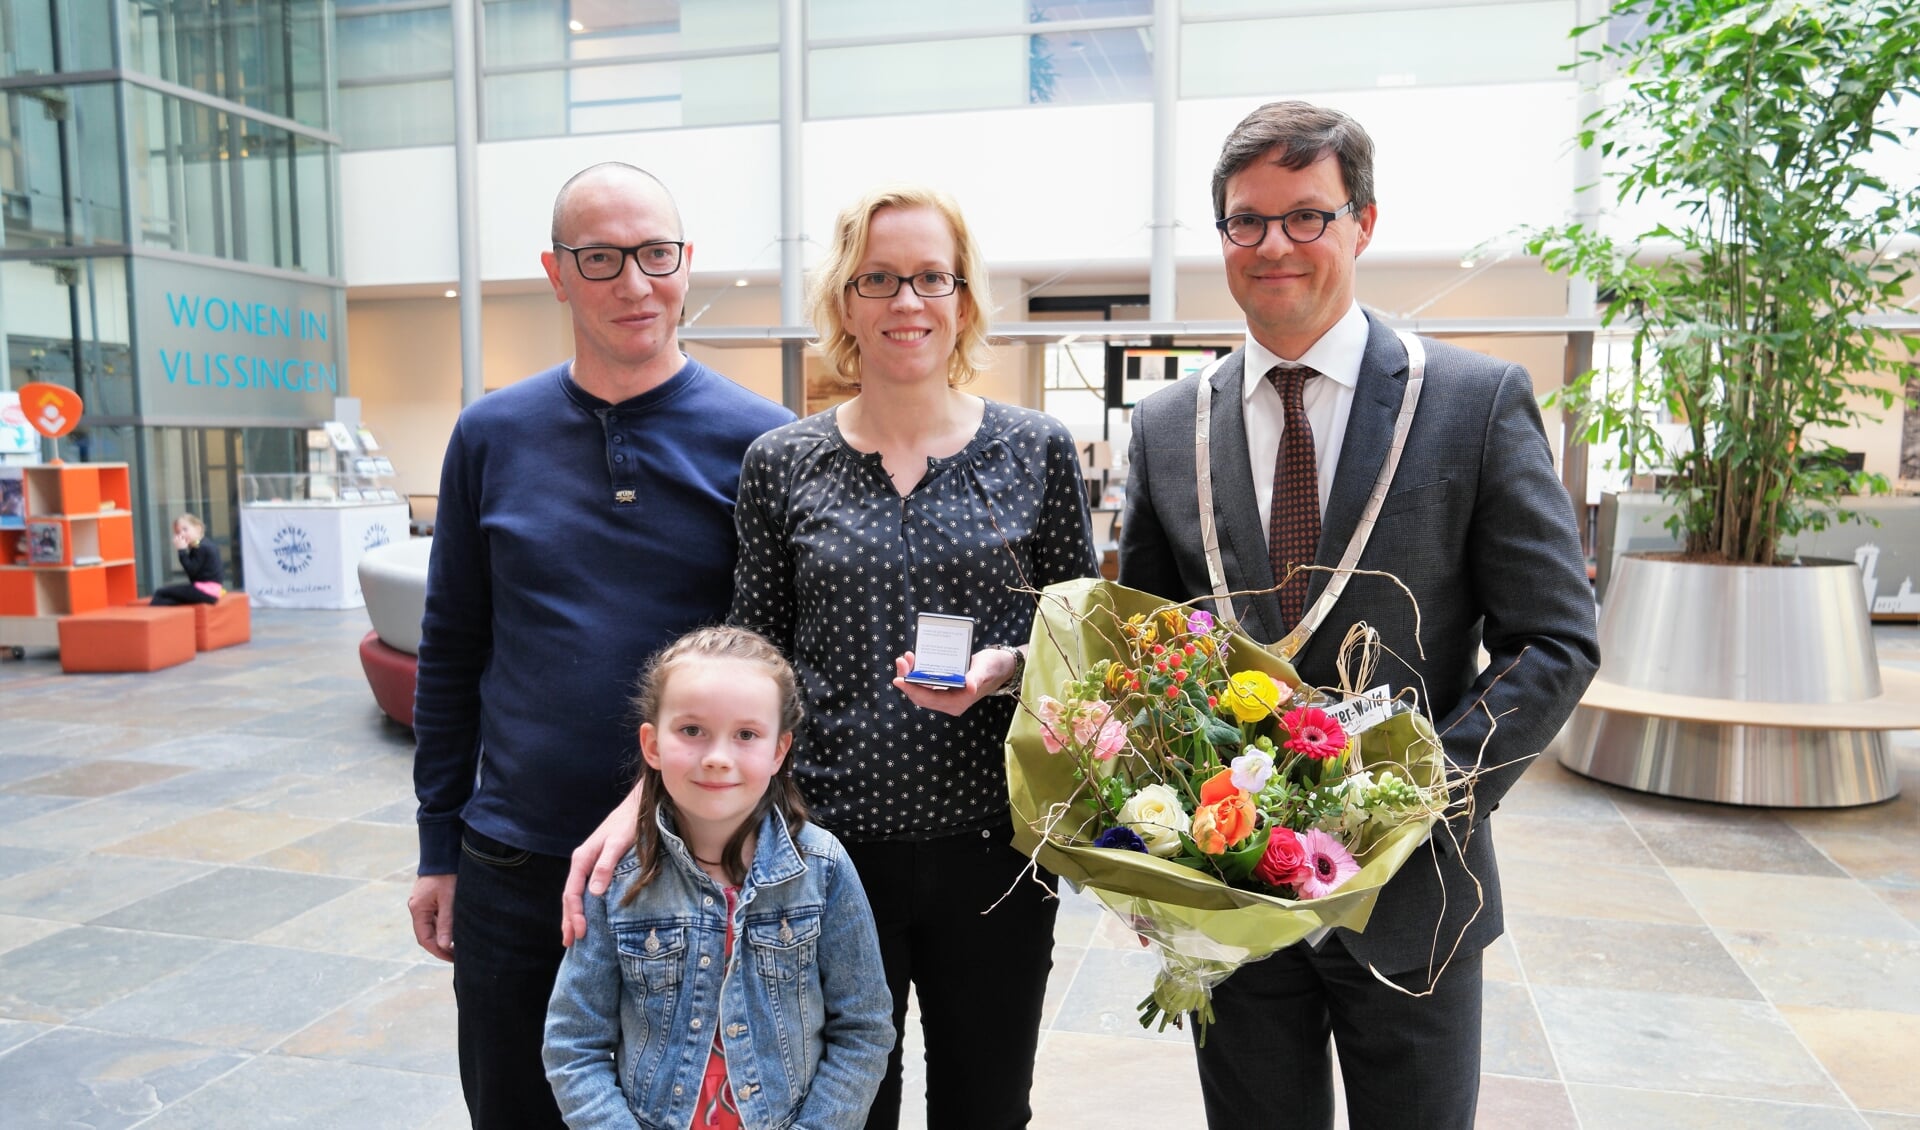 Mirjam Jongejan met echtgenoot Richard, dochtertje Cloë en burgemeester Bas van den Tillaar.